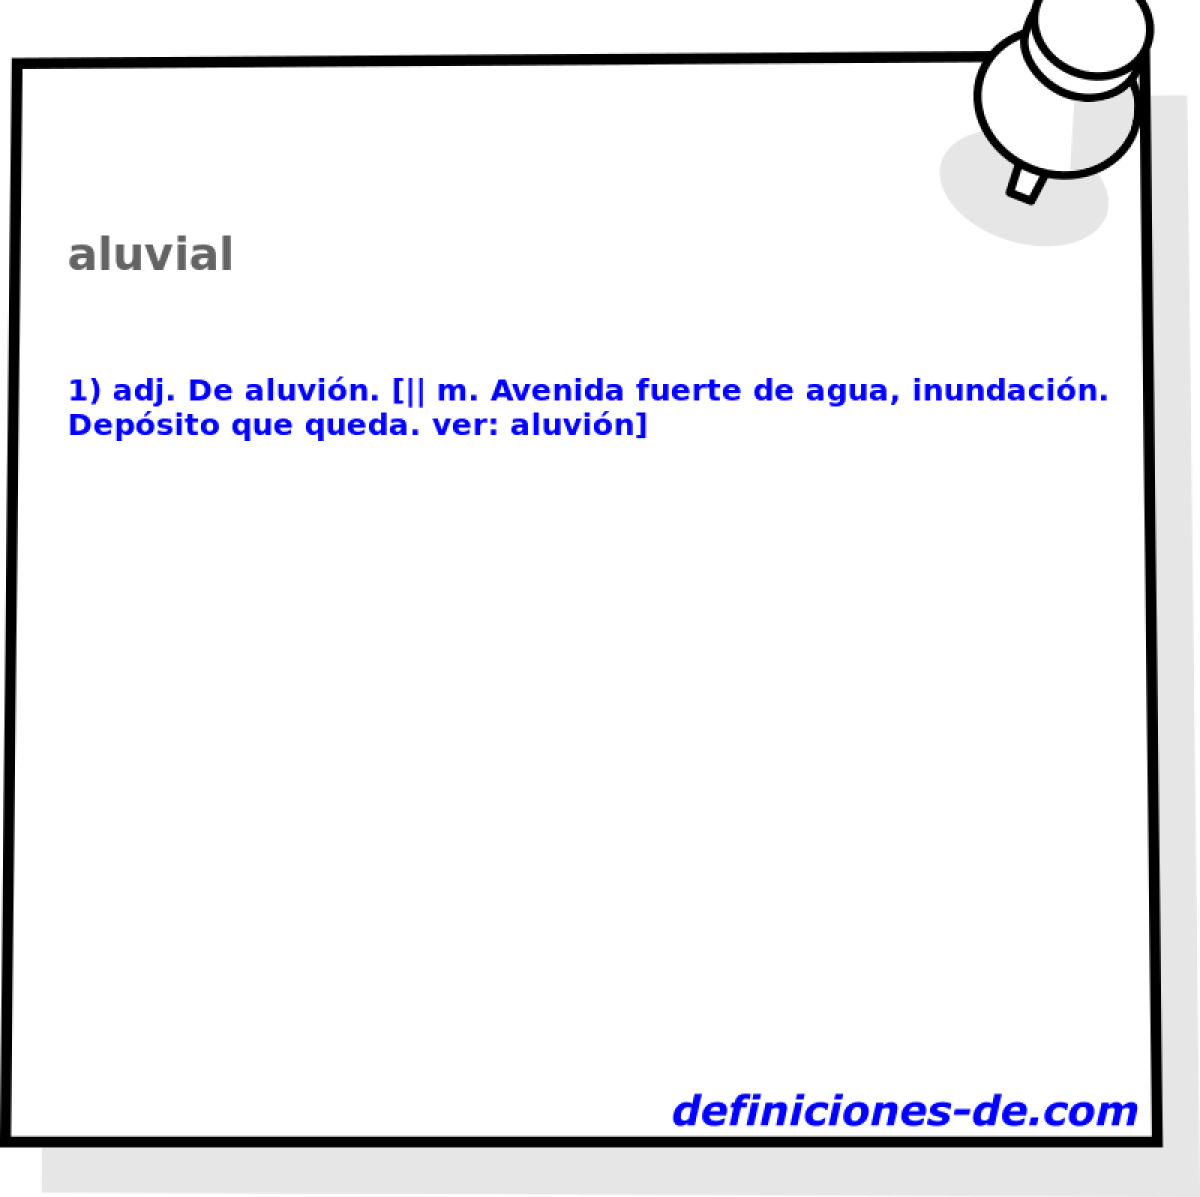 aluvial 